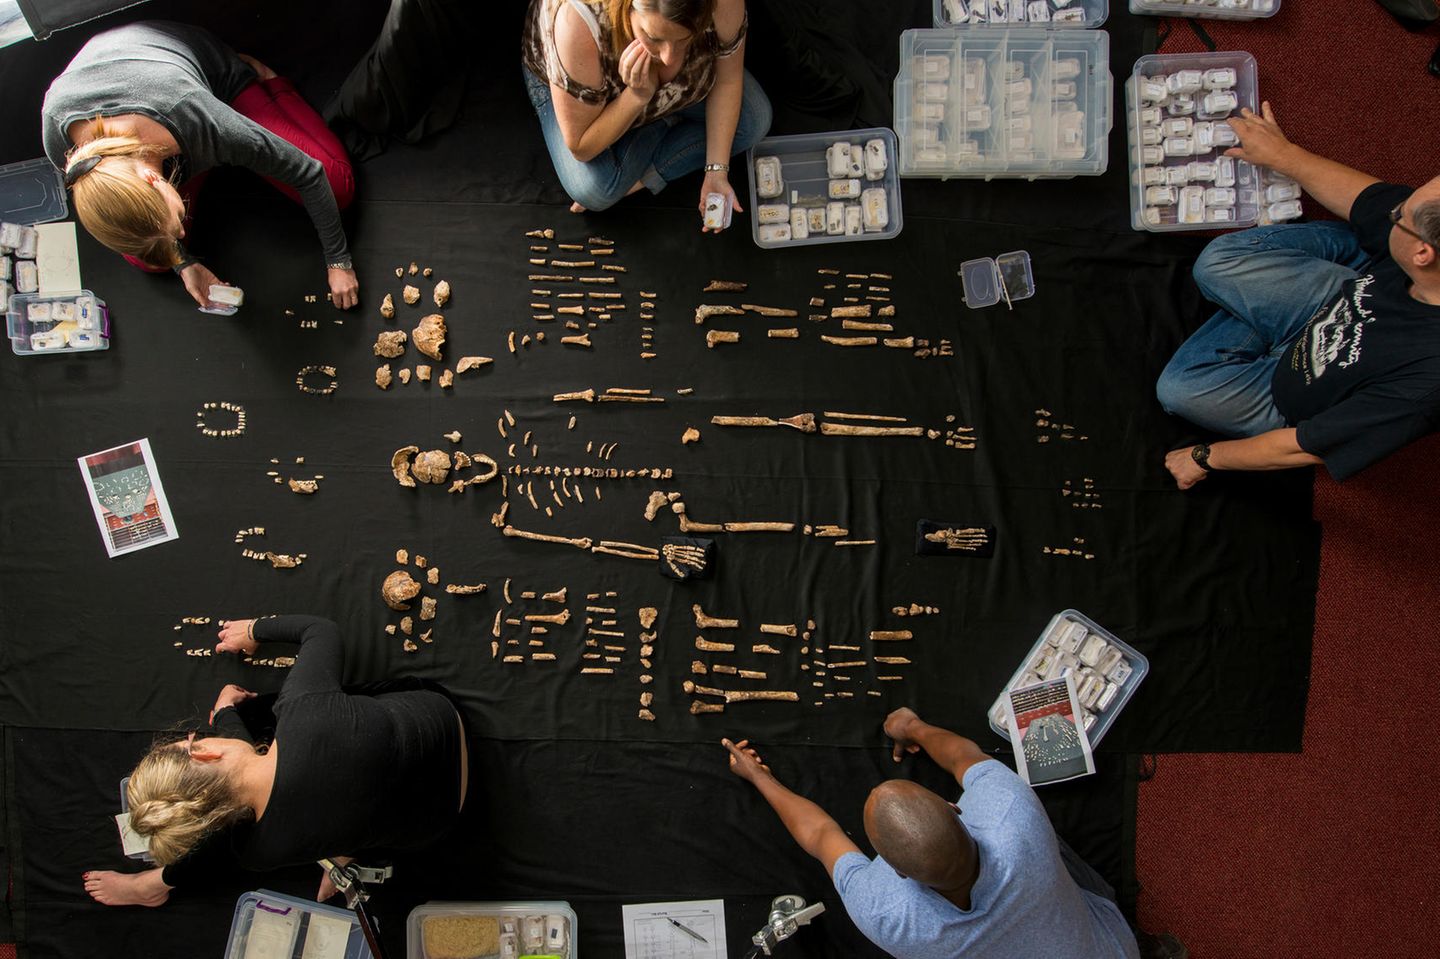 2013 wurden die Fossilien von Homo naledi in einer südafrikanischen Höhle entdeckt. Wissenschaftler*innen untersuchten die Überreste daraufhin an der Universität Johannesburg. Nach neuesten Erkenntnissen könnte der Fundort ein uralter Friedhof sein